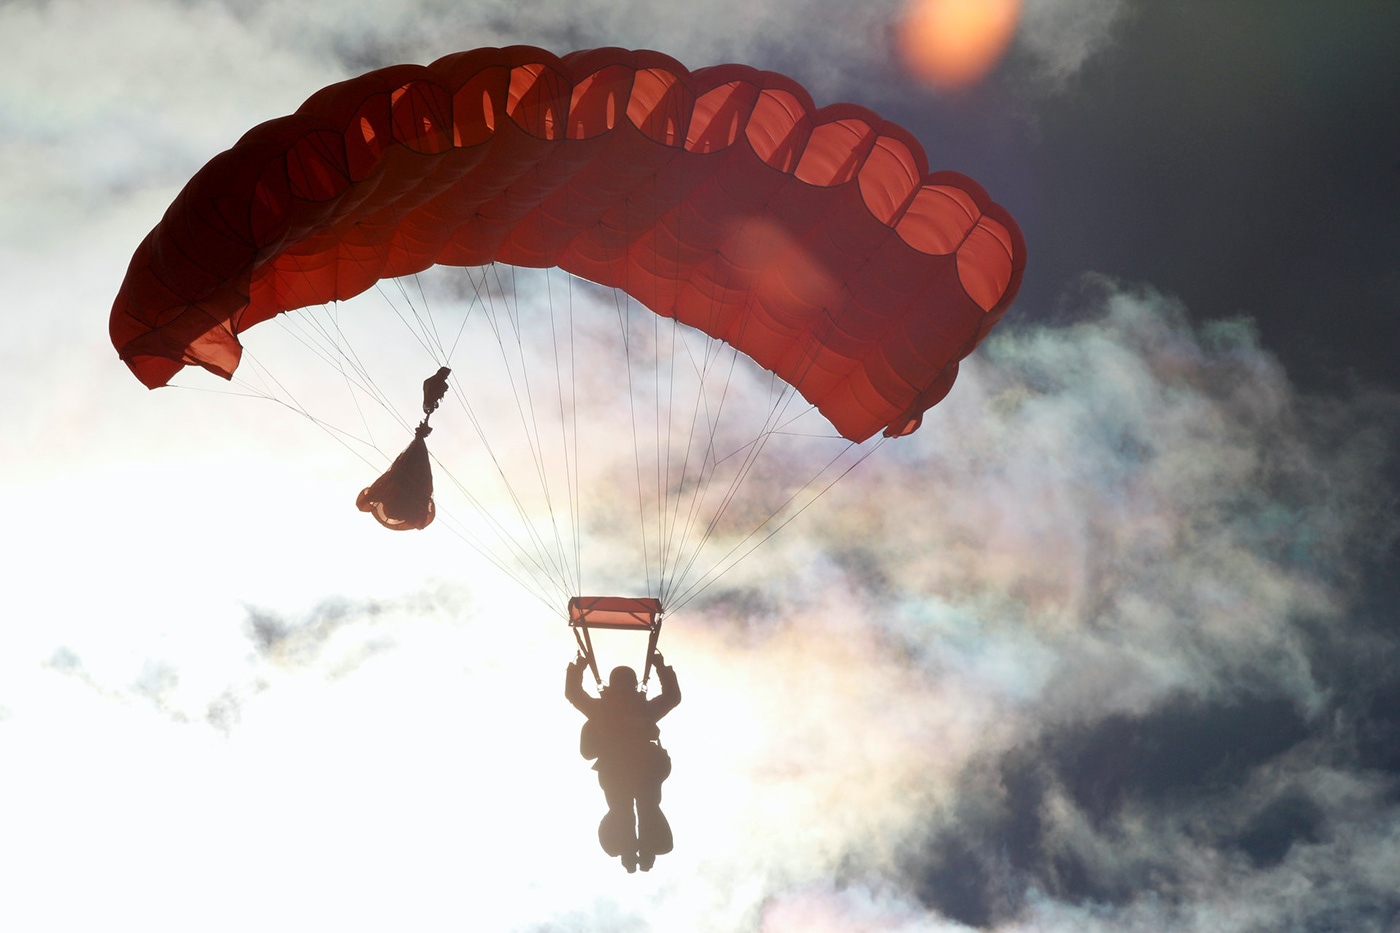 Image may contain: hot air balloon, parachuting and paragliding